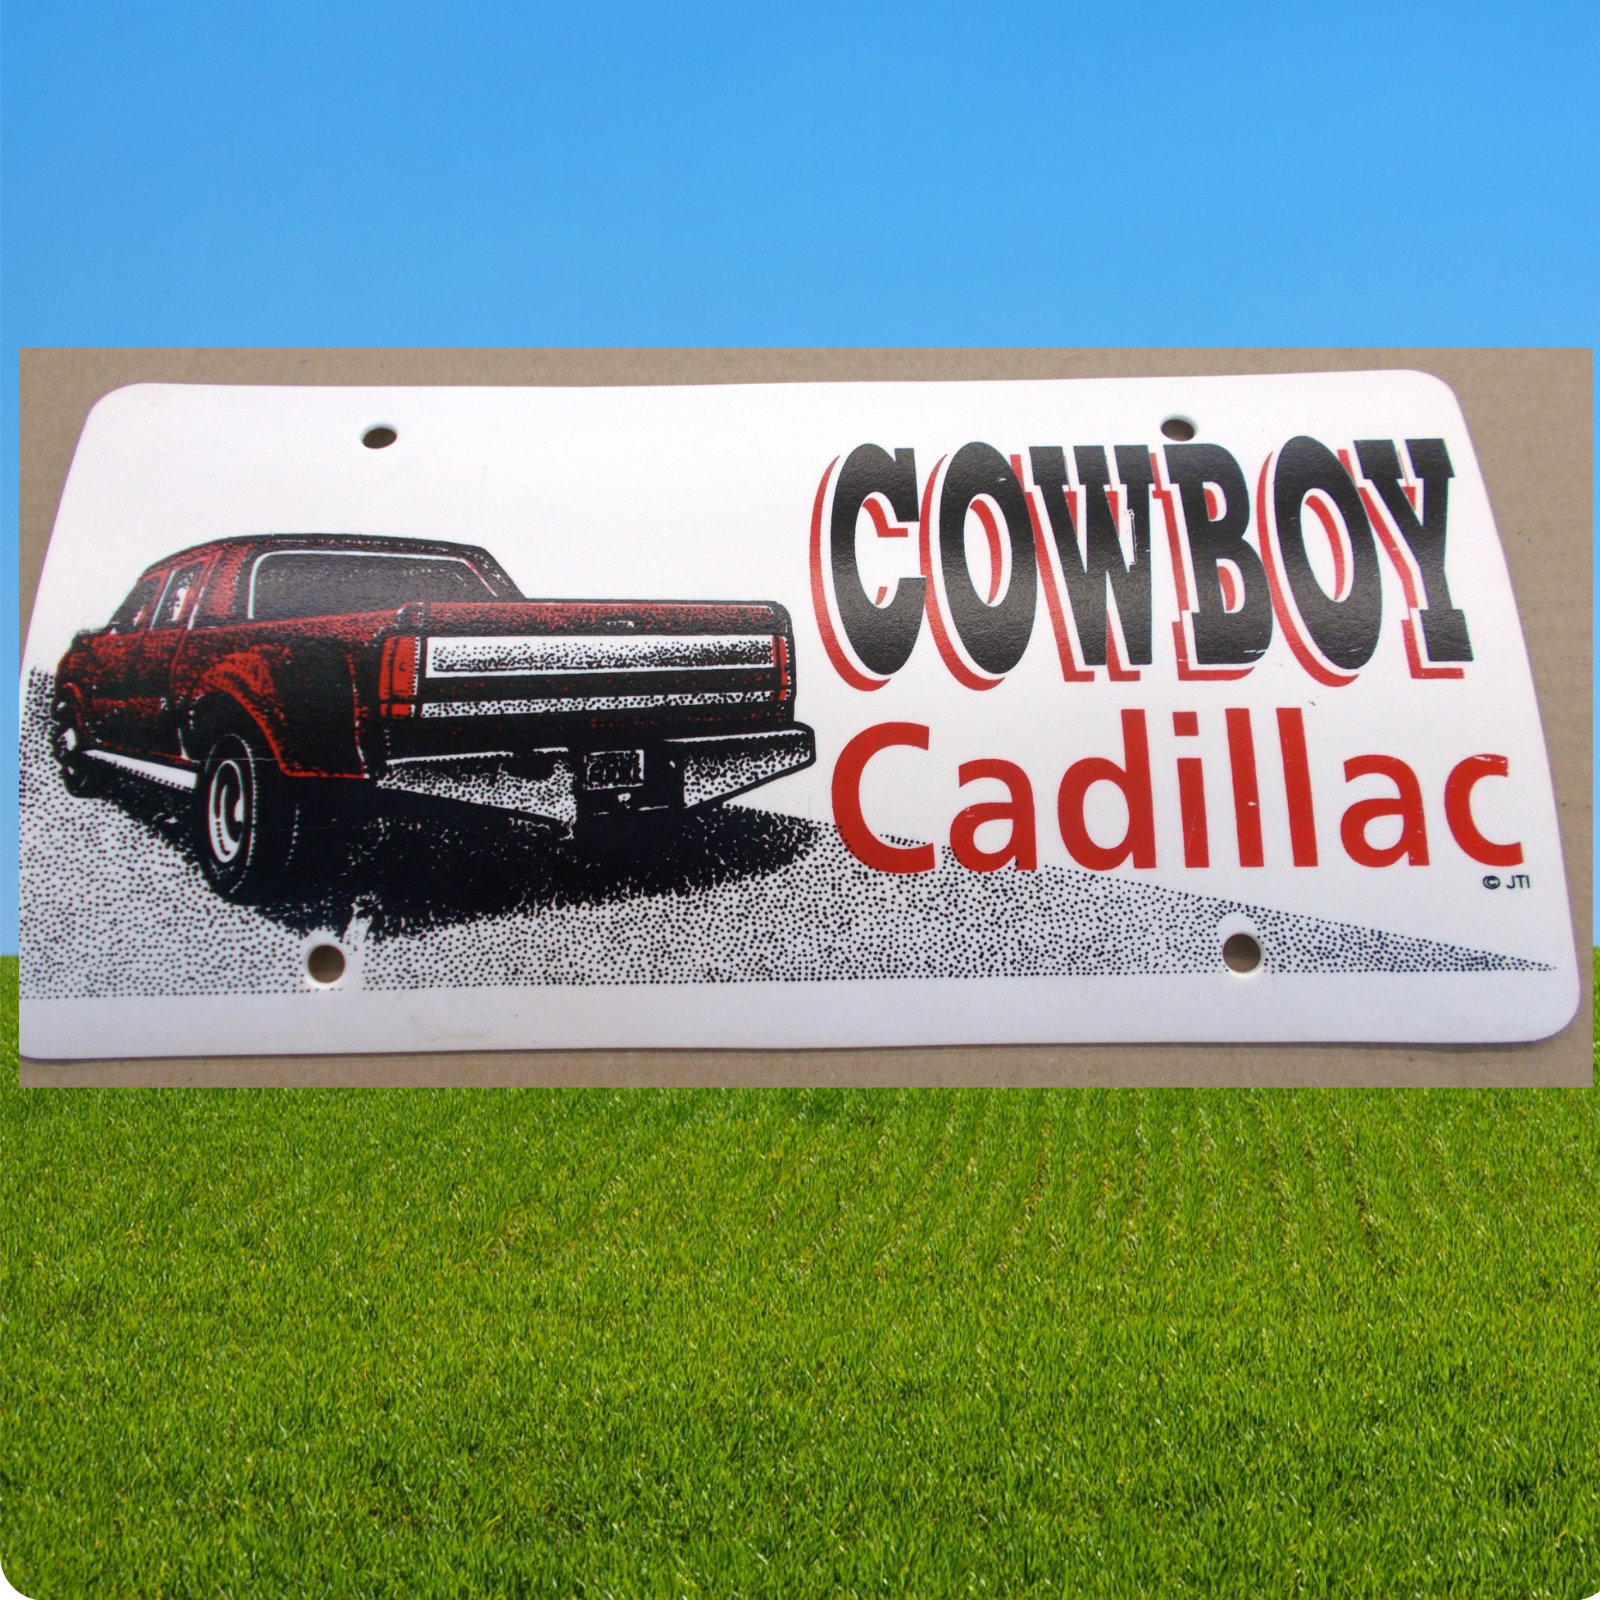 Schild "Cowboy Cadillac", Plastikschild, Western Schild, 30 x 15